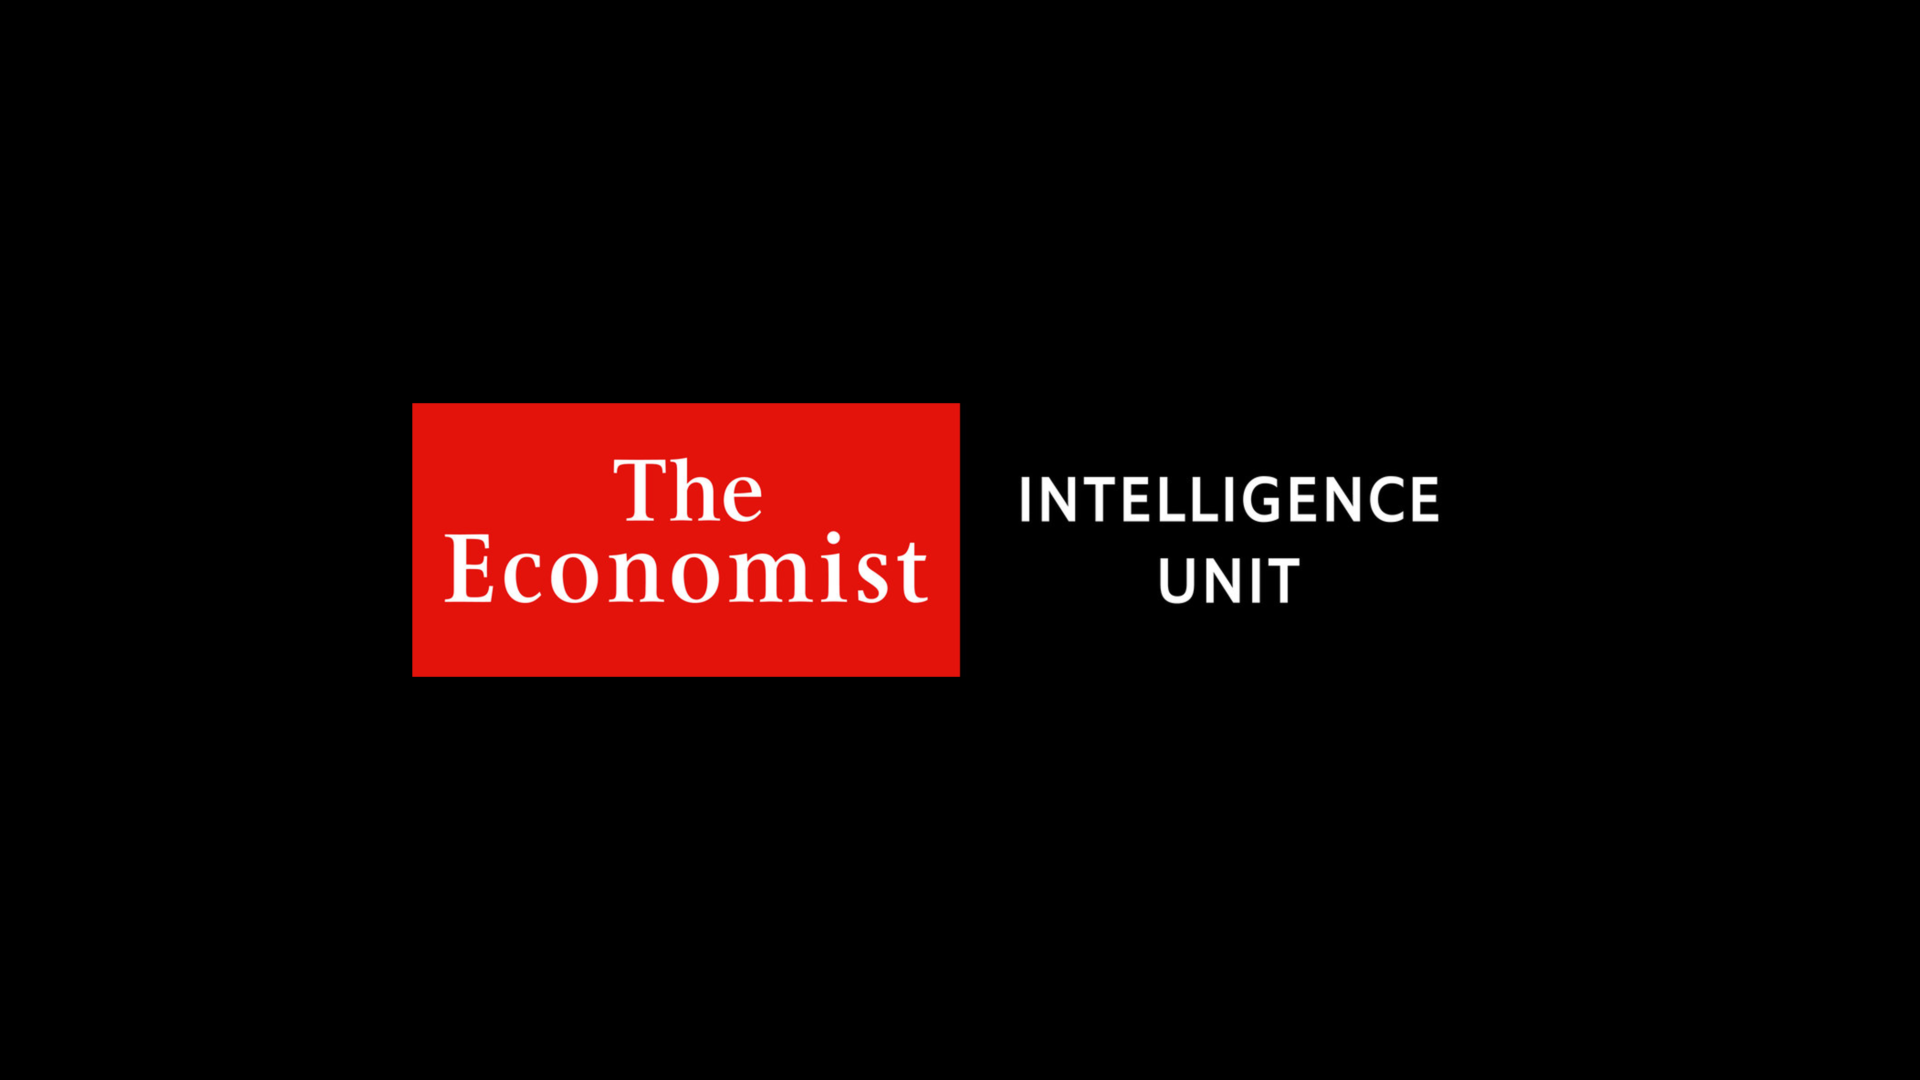 The Economist Intelligence Unit